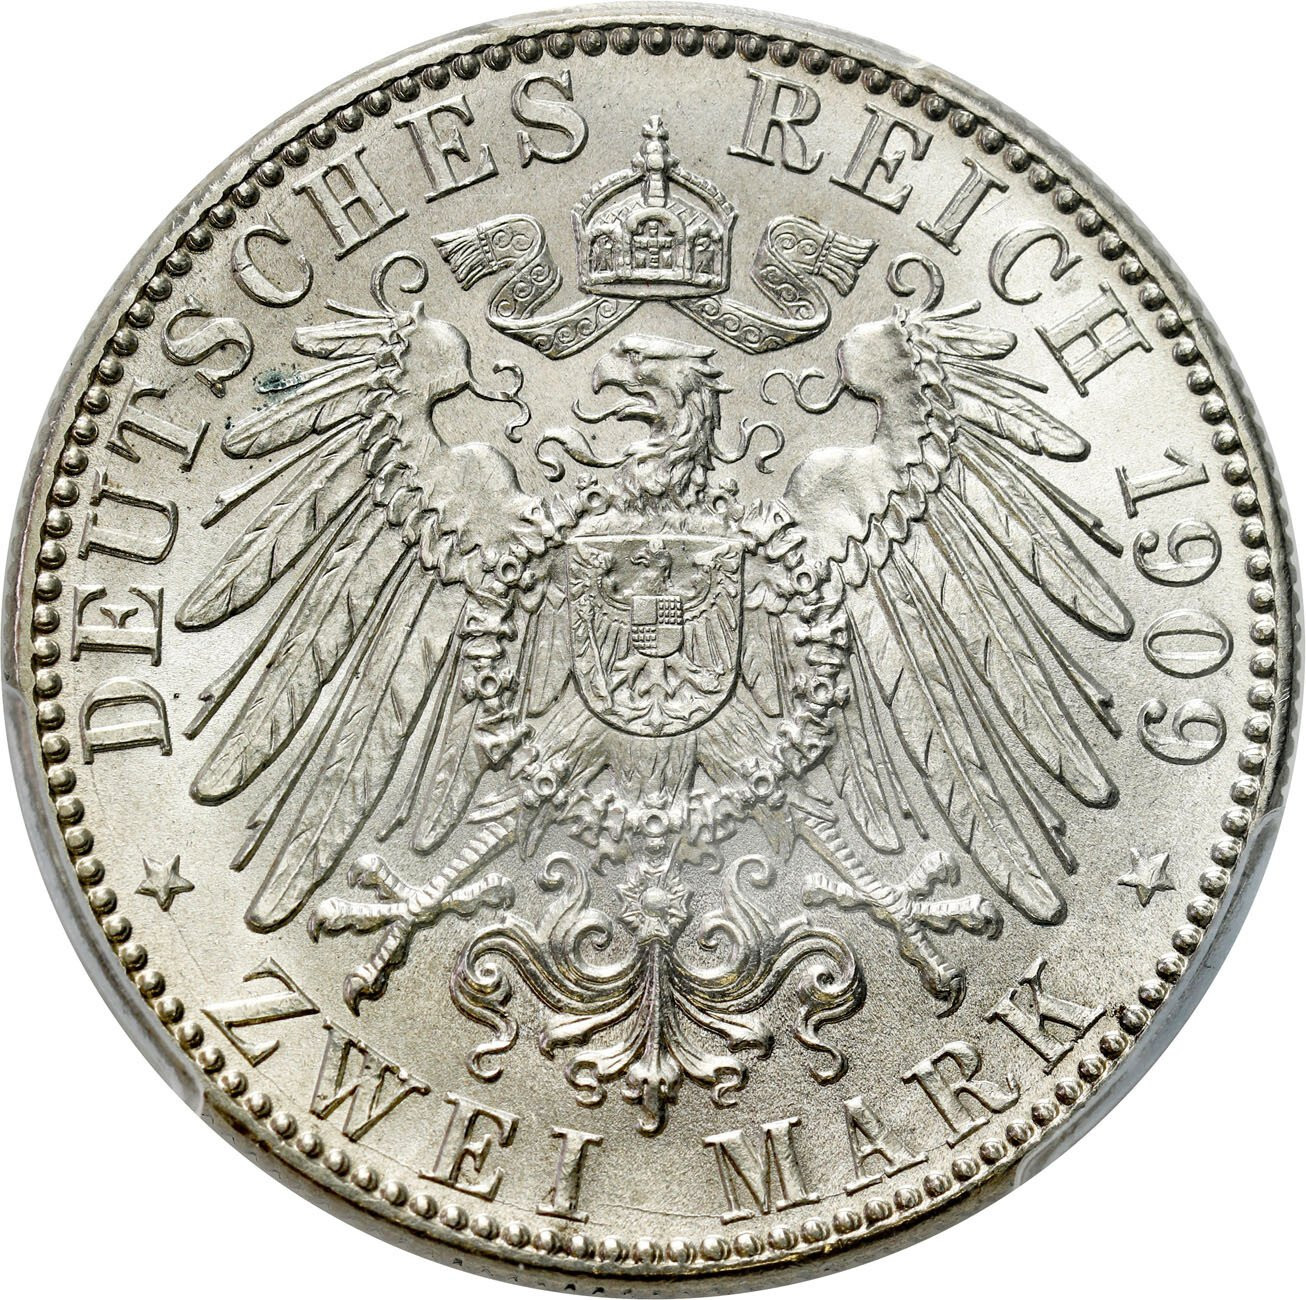 Niemcy, Saksonia. 2 marki 1909 Uni. Leipzig, Muldenhütten PCGS MS64 - PIĘKNE